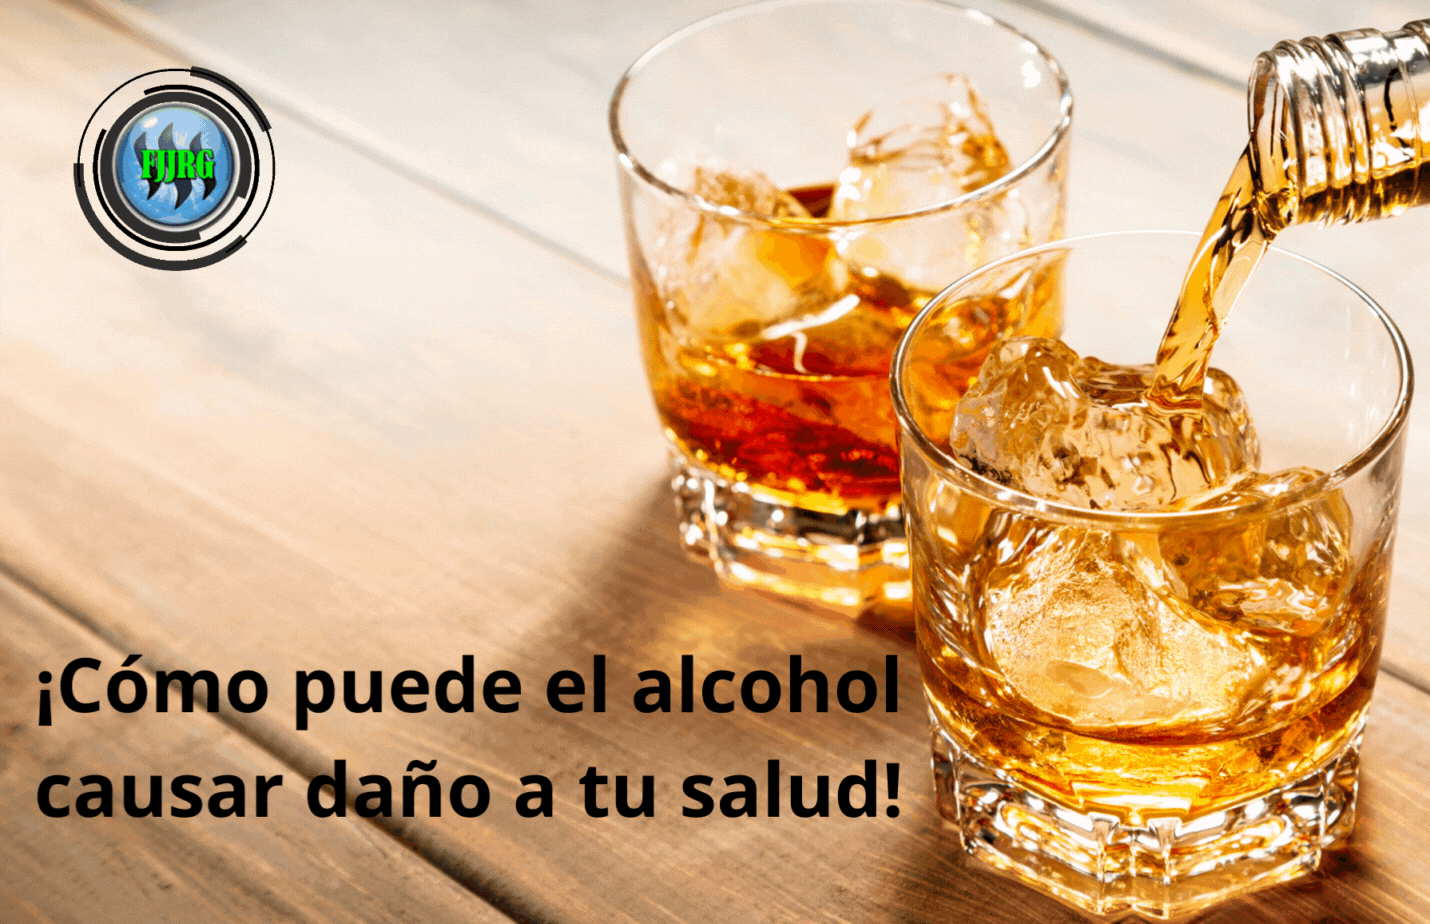 ¡Cómo puede el alcohol causar daño a tu salud!.gif